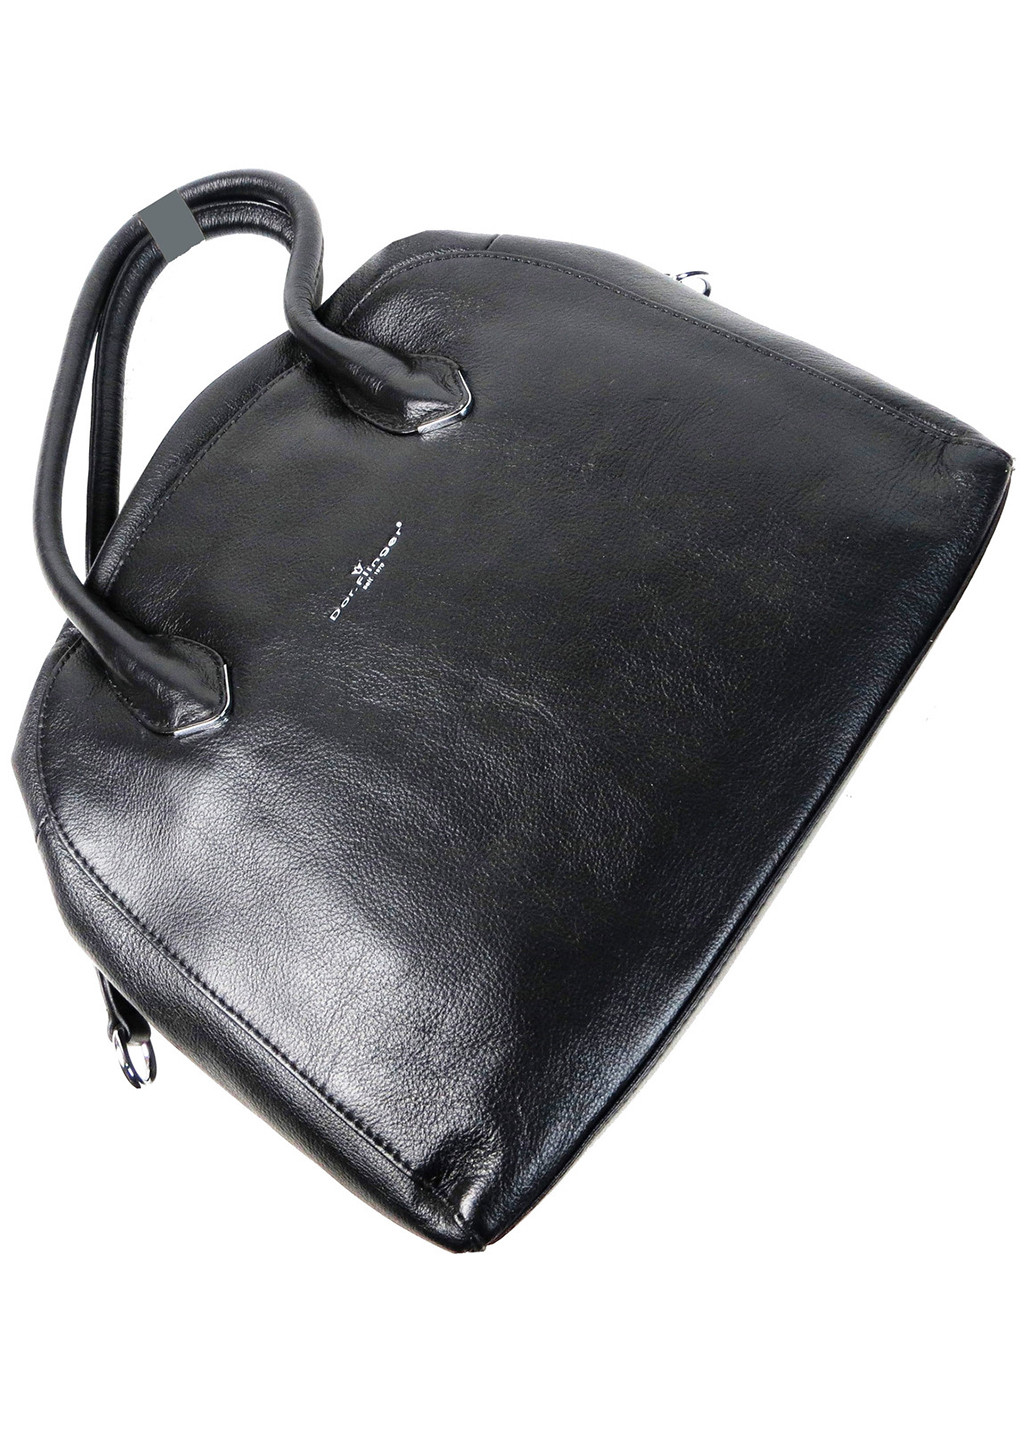 Жіноча шкіряна сумка середнього розміру 30х26х11 см Dor.Flinger (257045495)